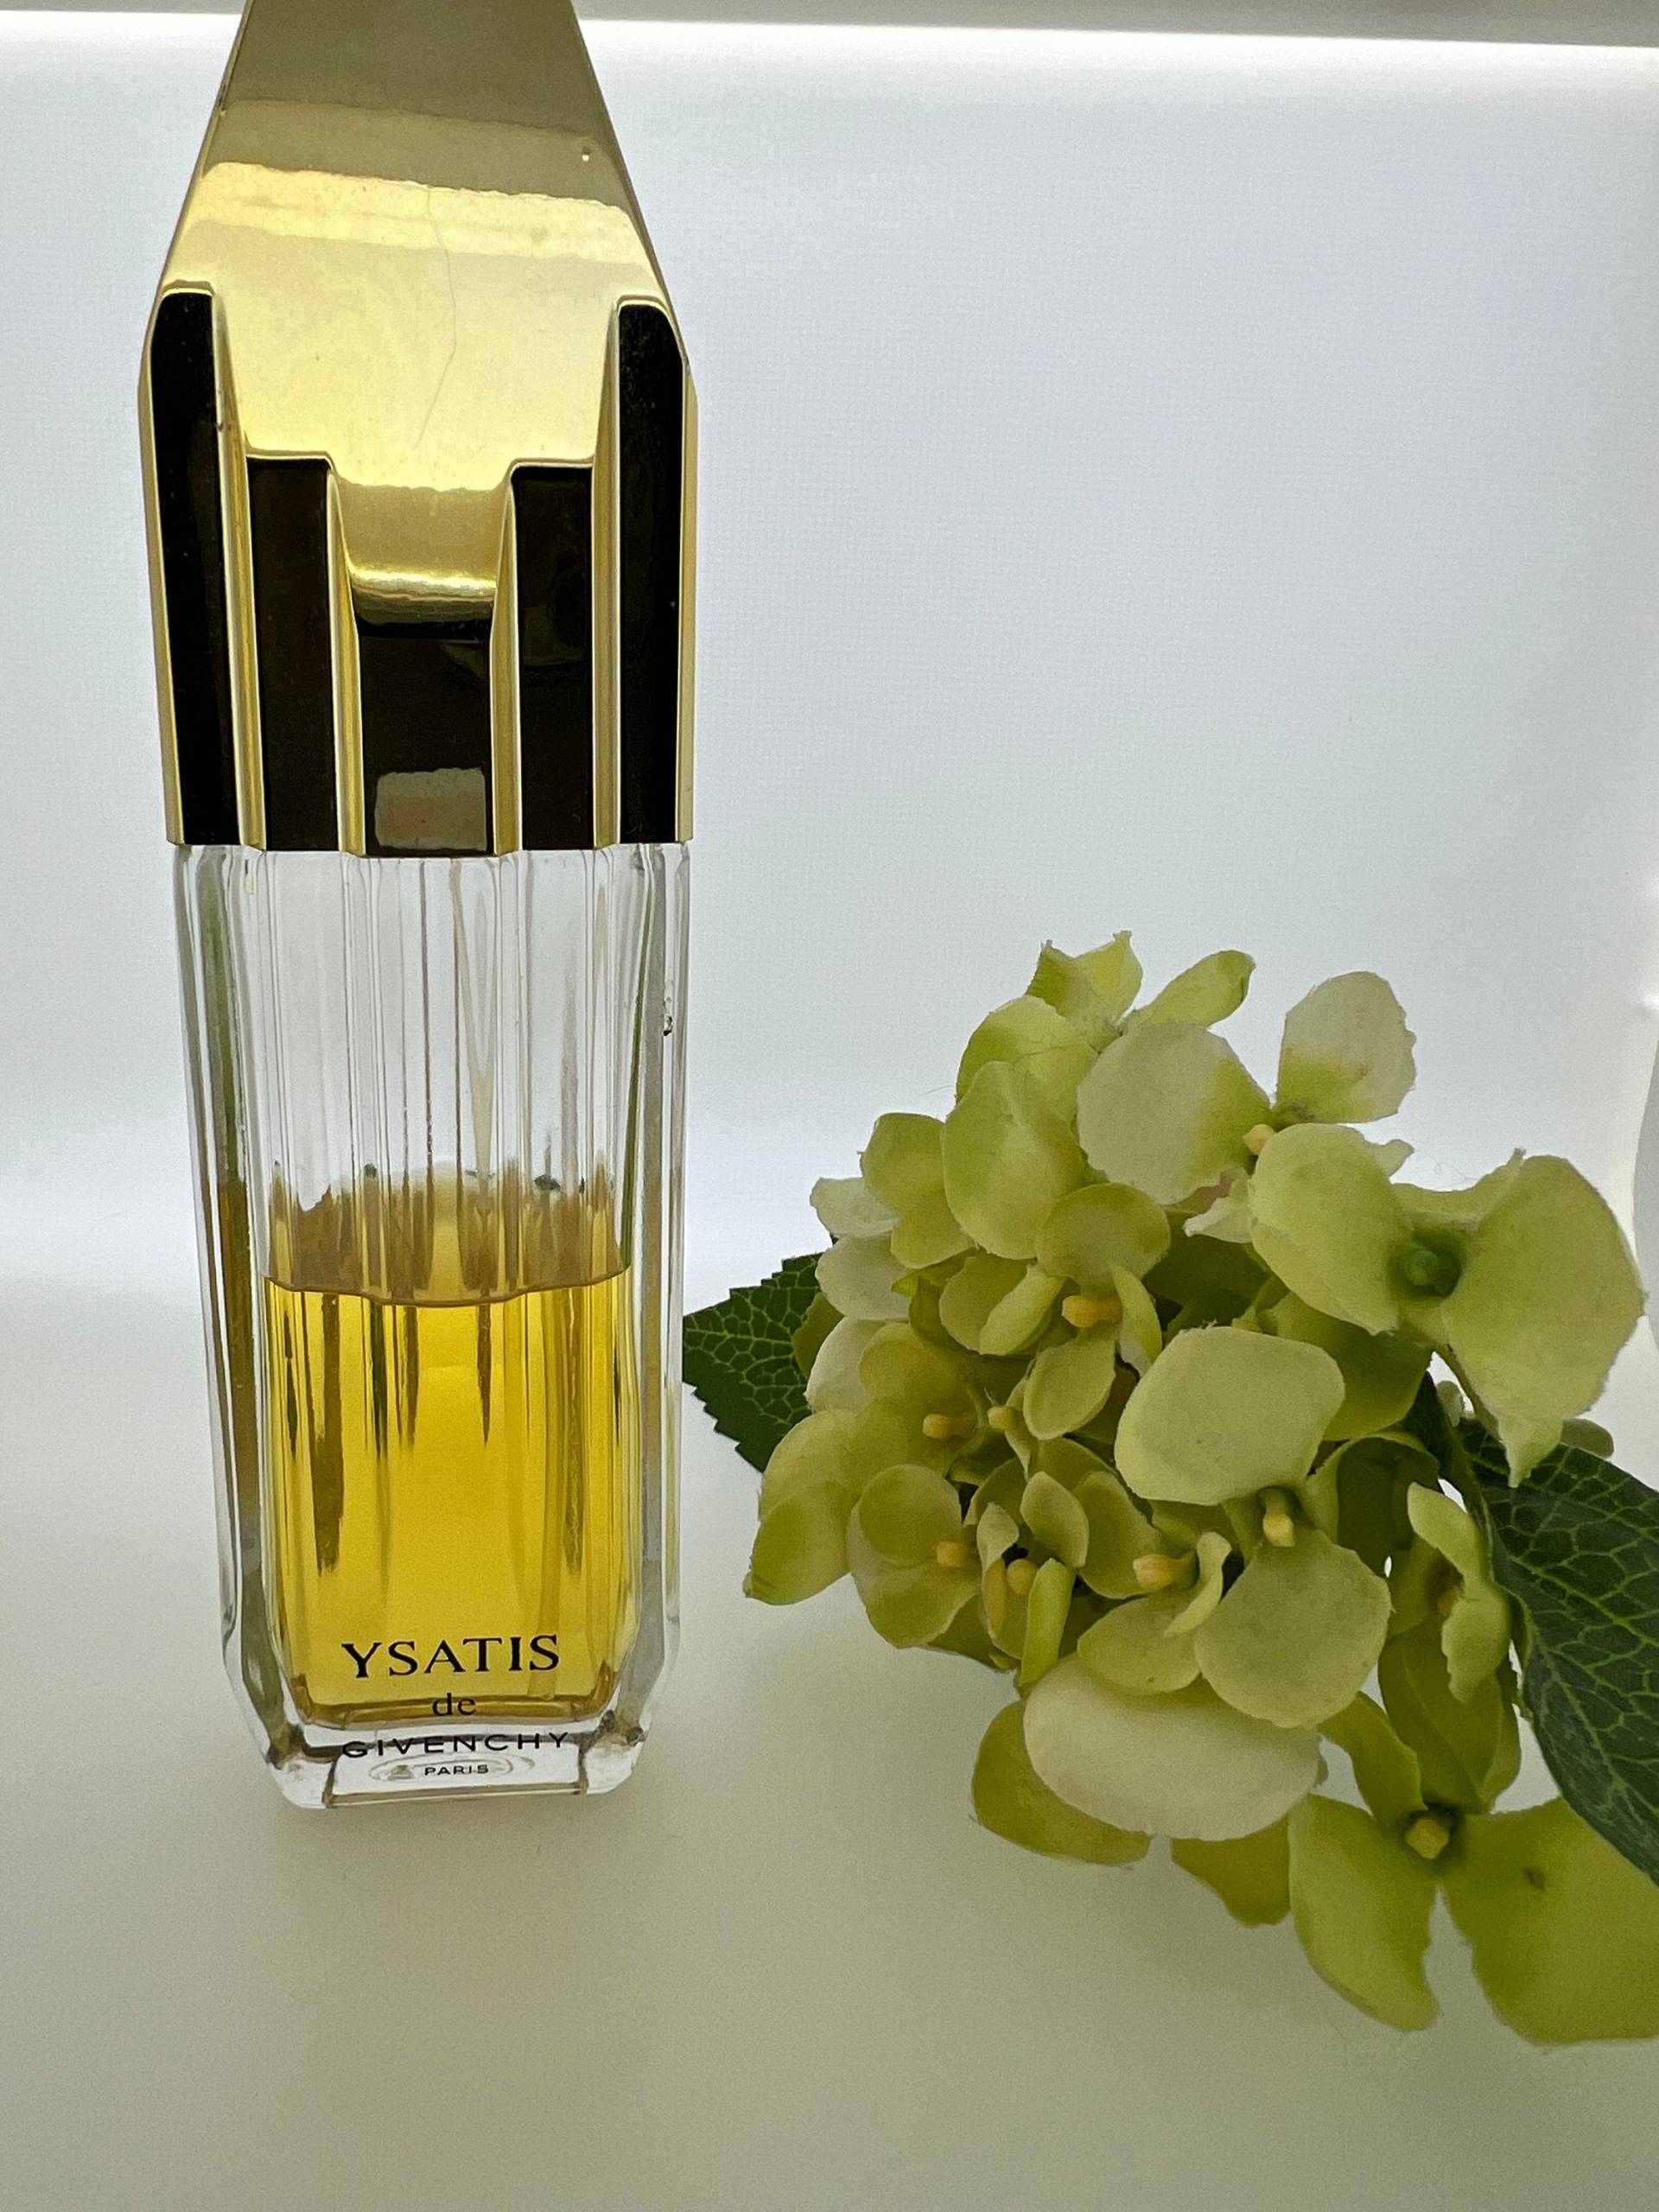 Vintage Ysatis By Gegebenchy | 1984 Parfum 100 Ml | 60% Füllung von Etsy - VintagePerfumeShop